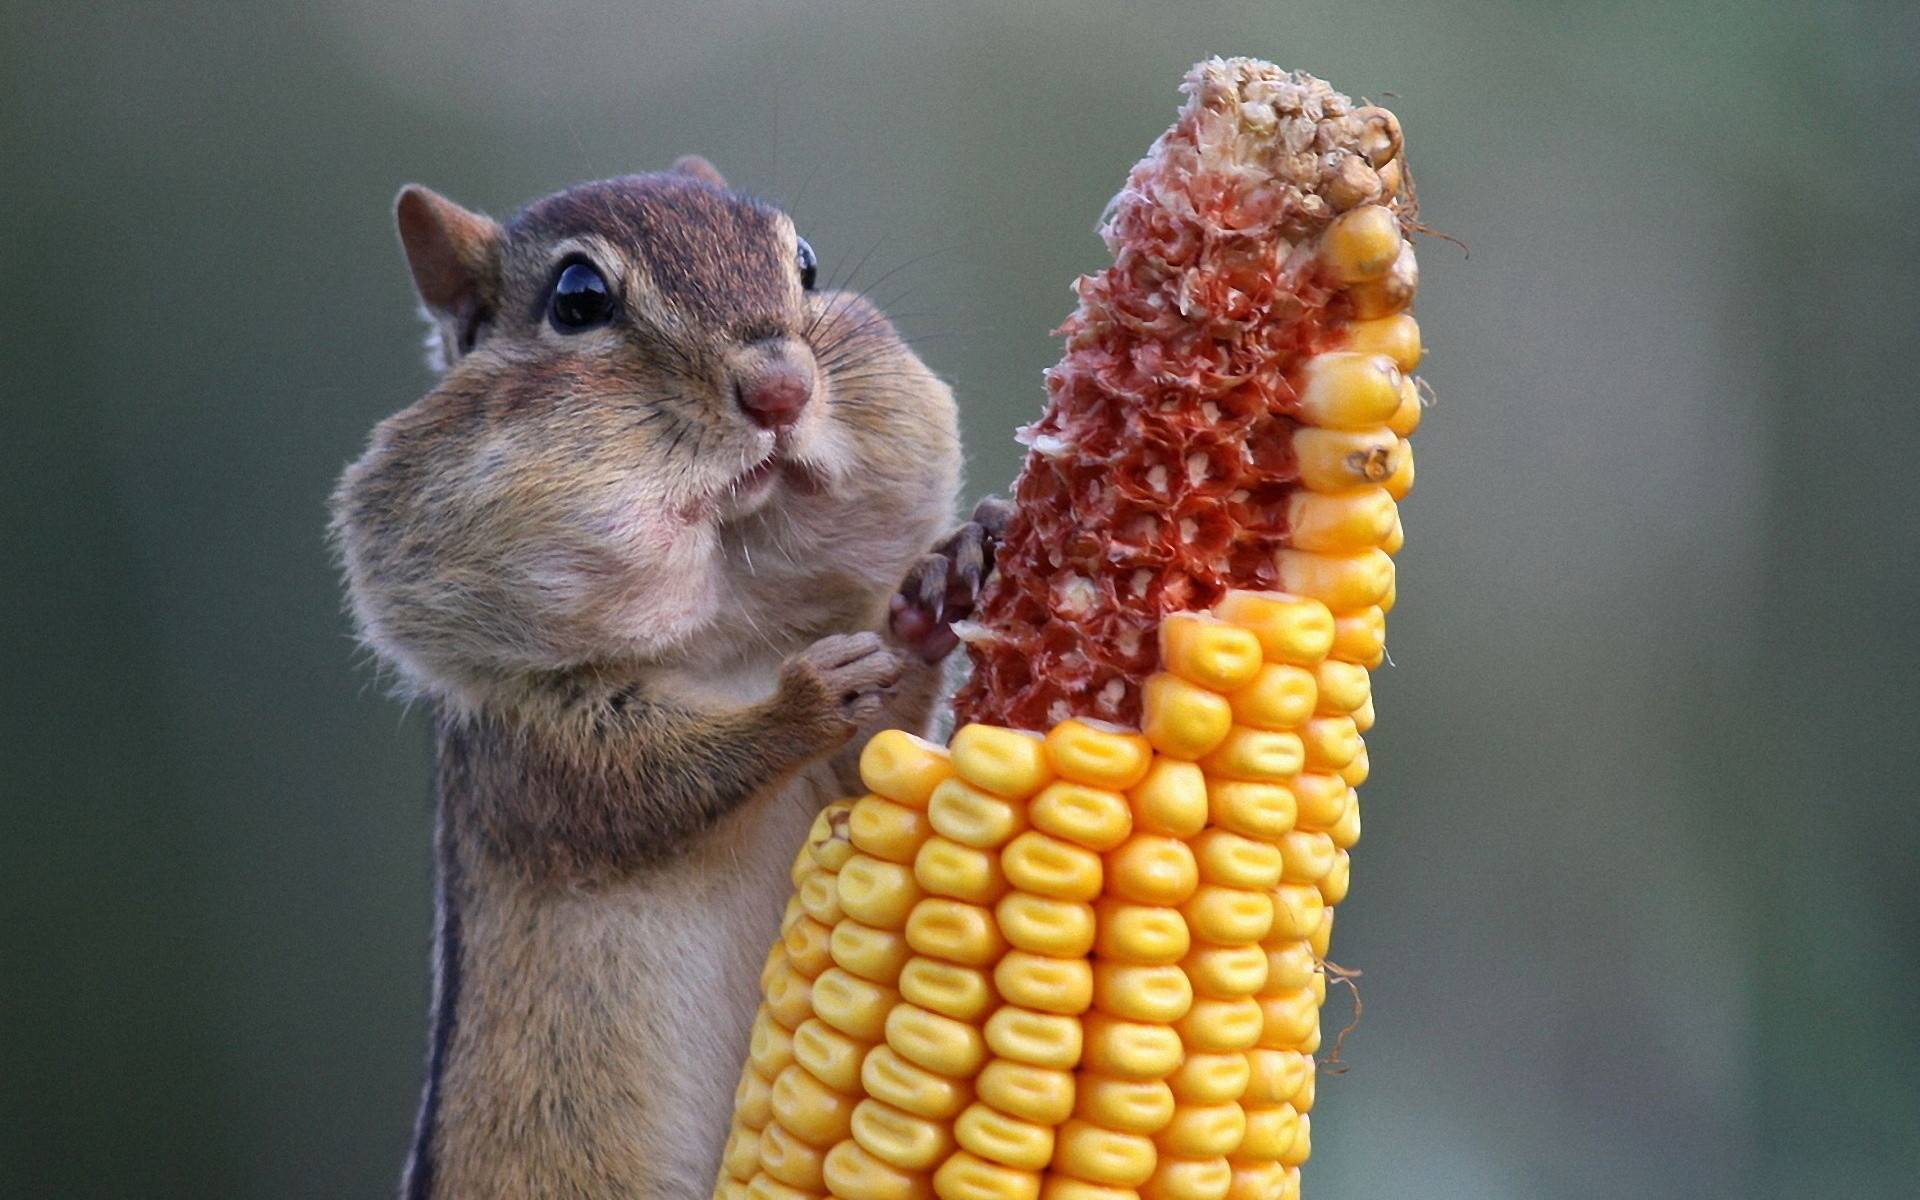 chipmunk eating corn - 10000